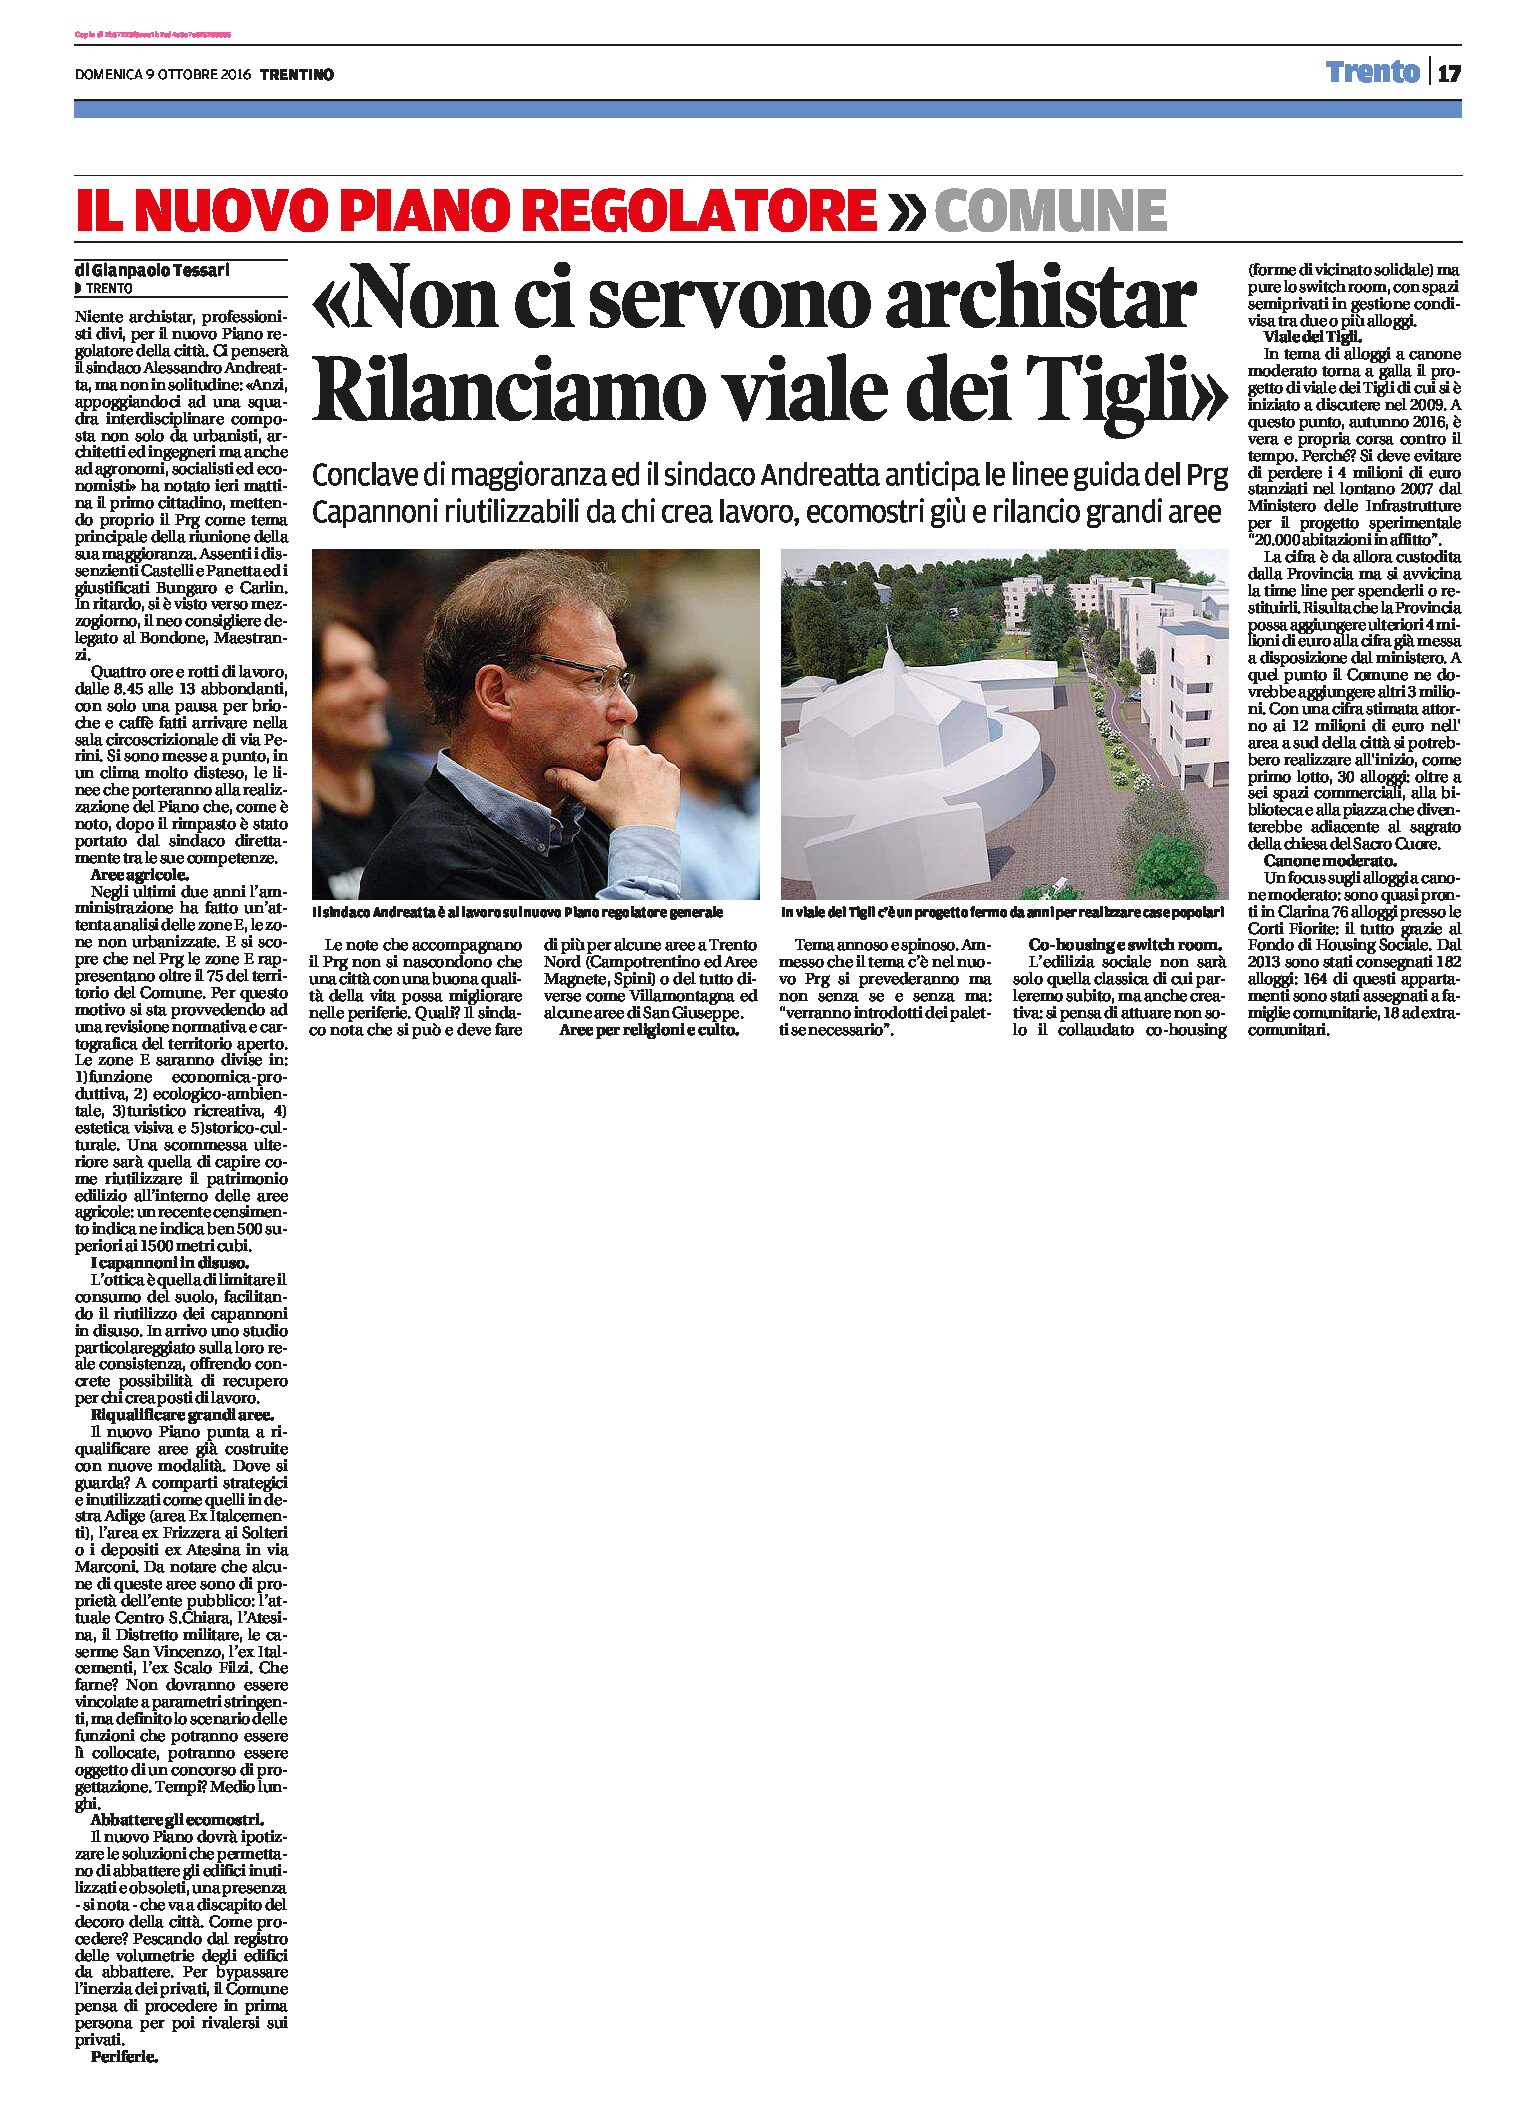 Trento, nuovo Prg: il sindaco “non ci servono archistar. Rilanciamo viale dei Tigli”